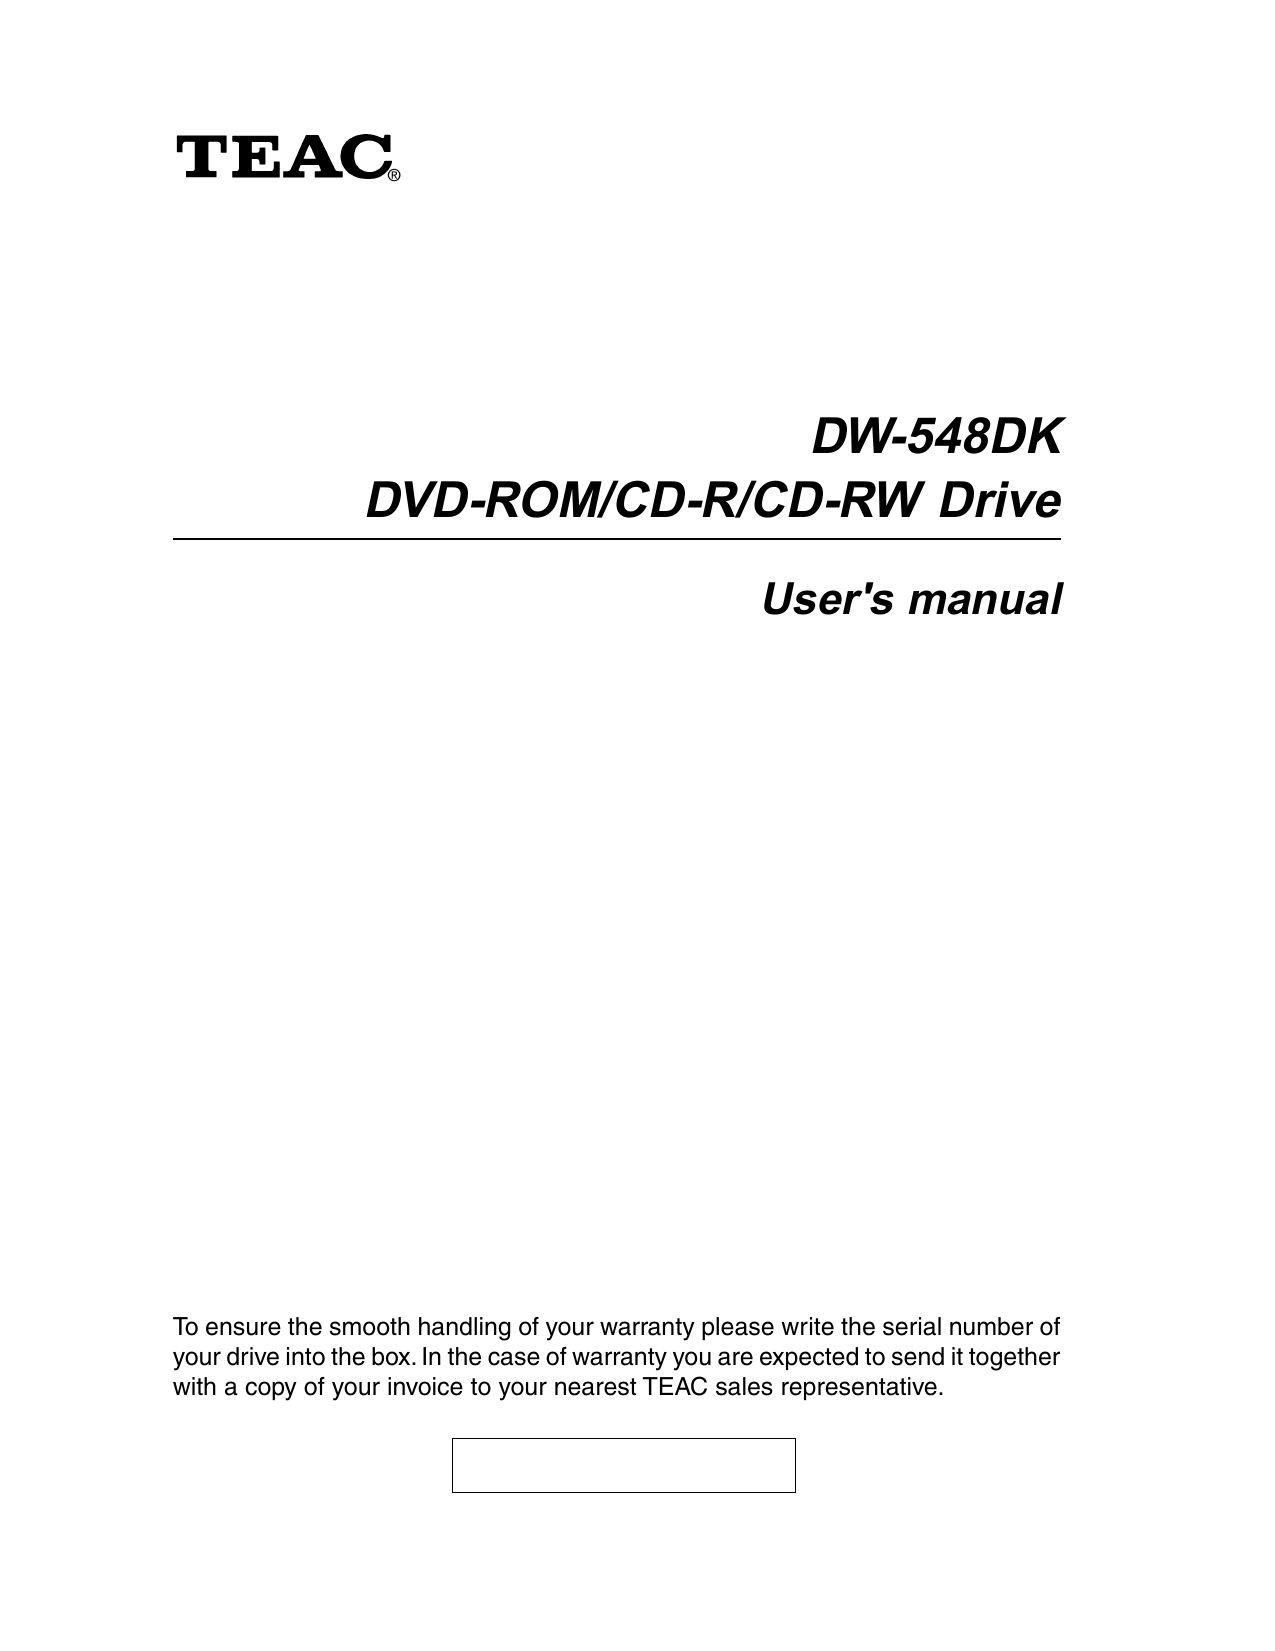 TEAC DW-26DK User manual  Manualzz